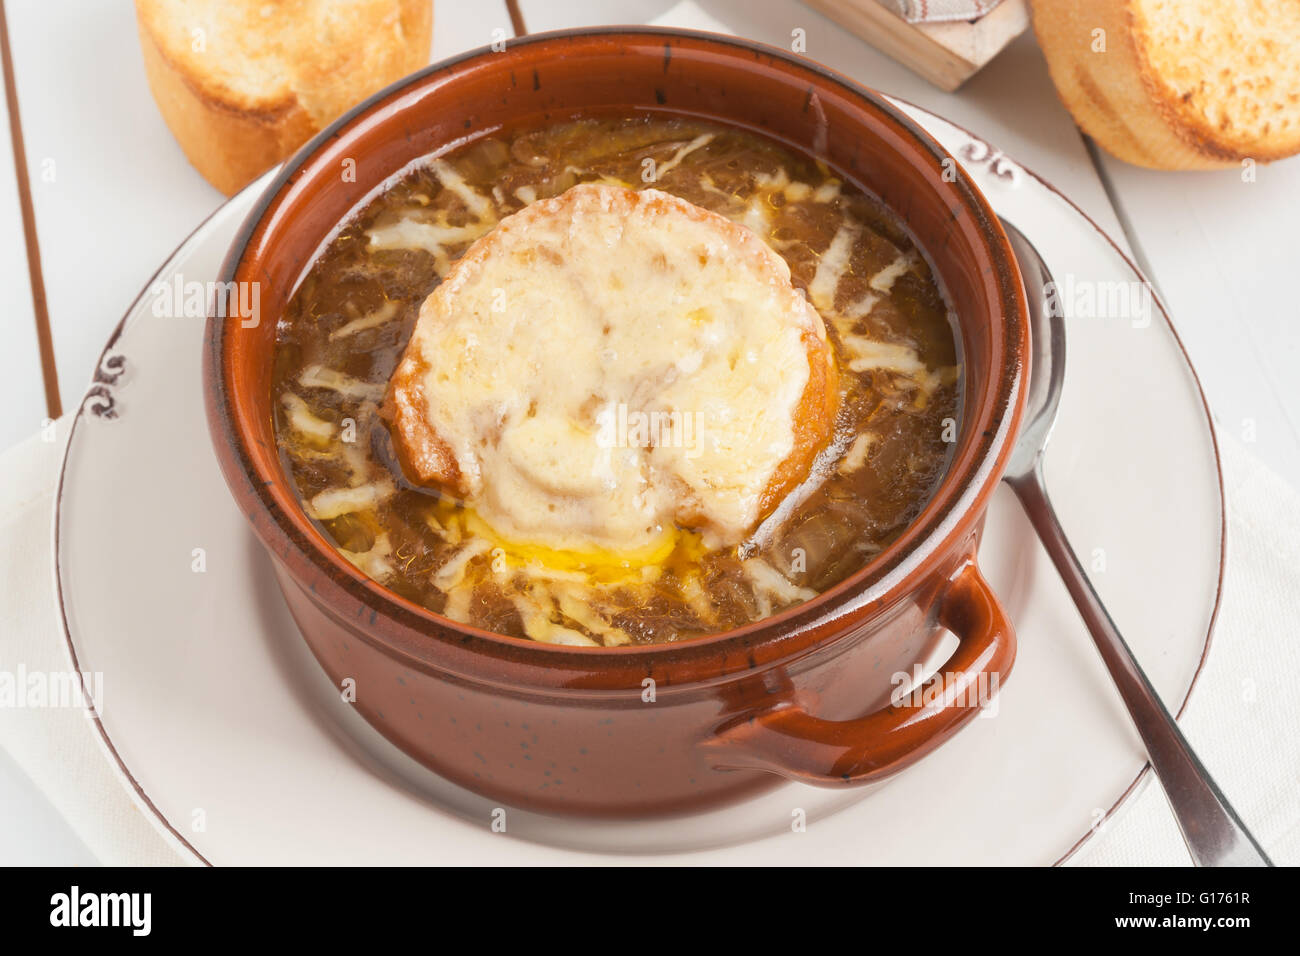 Soupe à l'oignon avec des croûtons grillés au fromage gruyère Banque D'Images